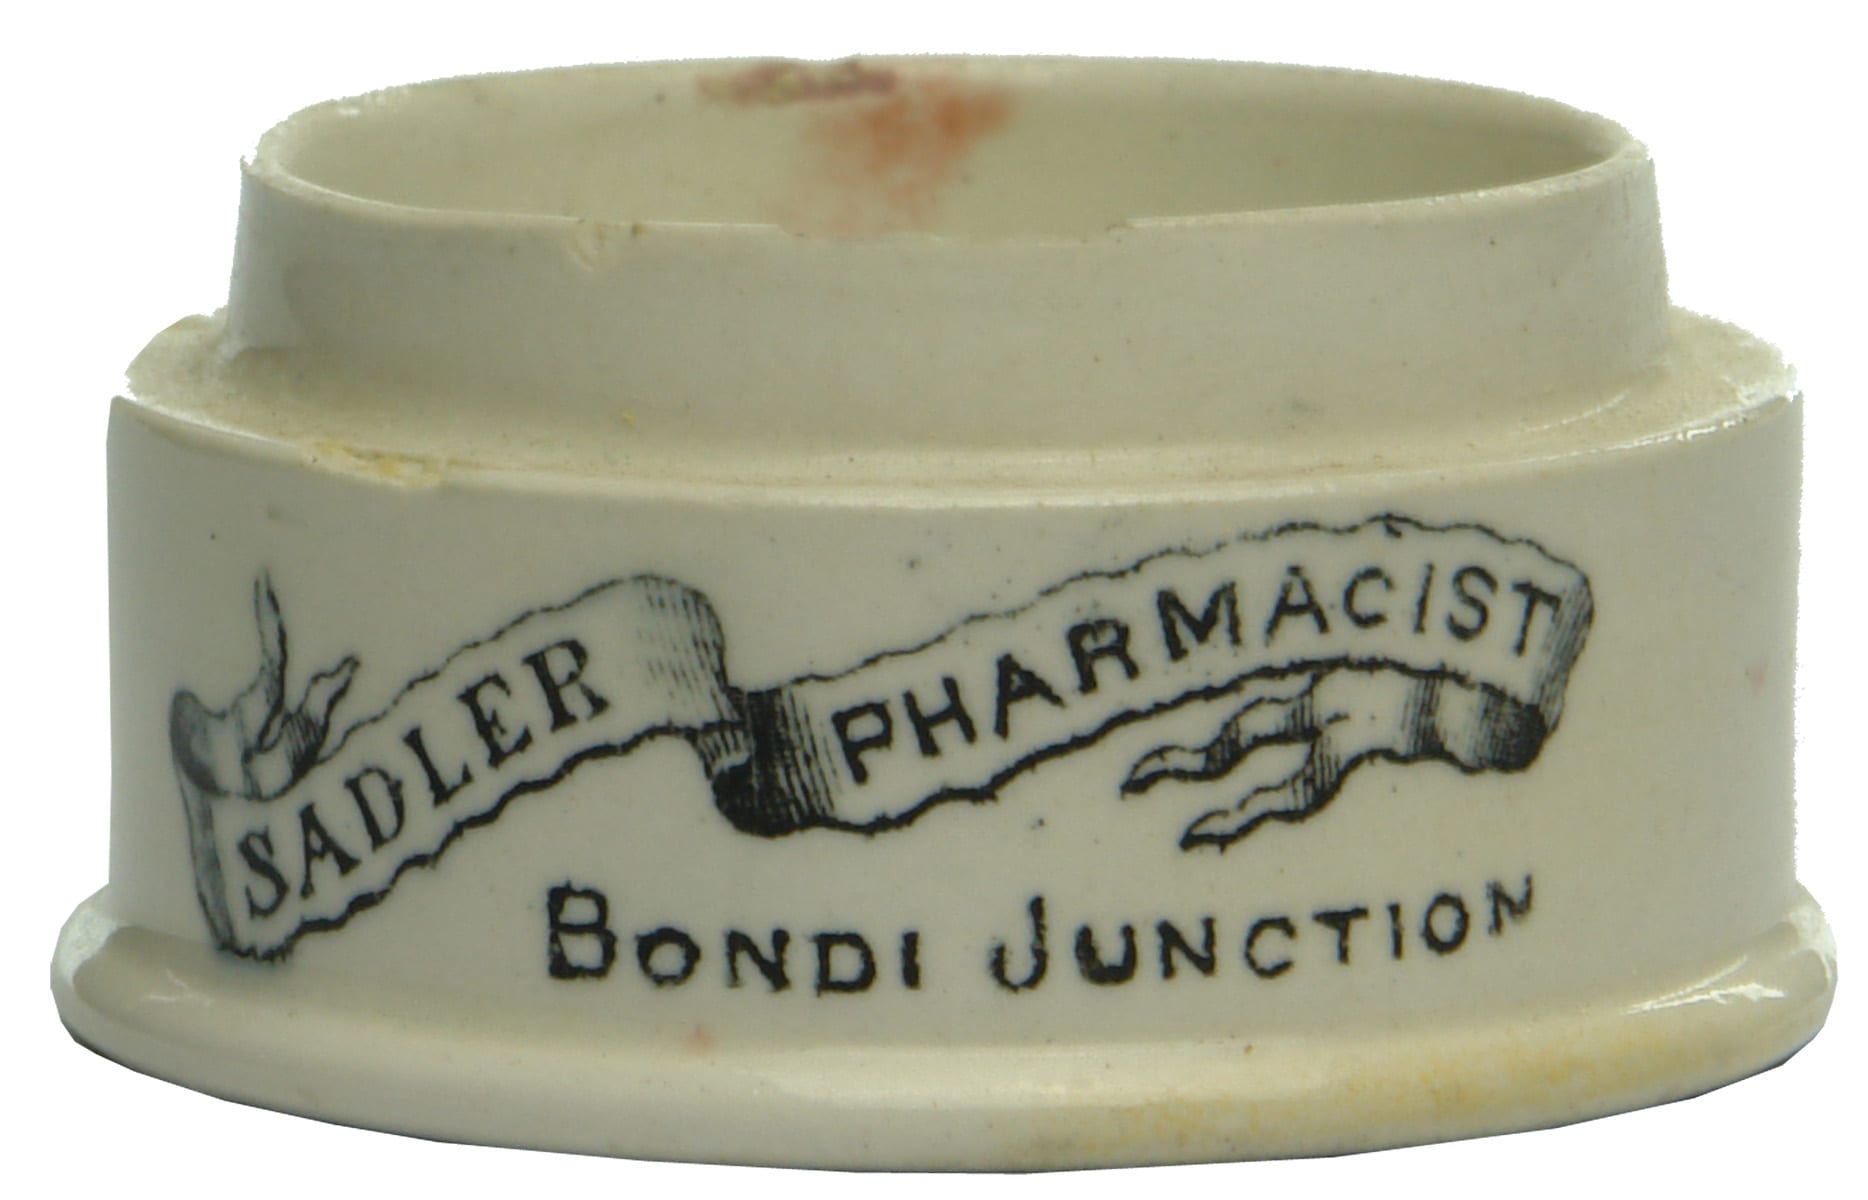 Sadler Pharmacist Bondi Junction Ceramic Pot